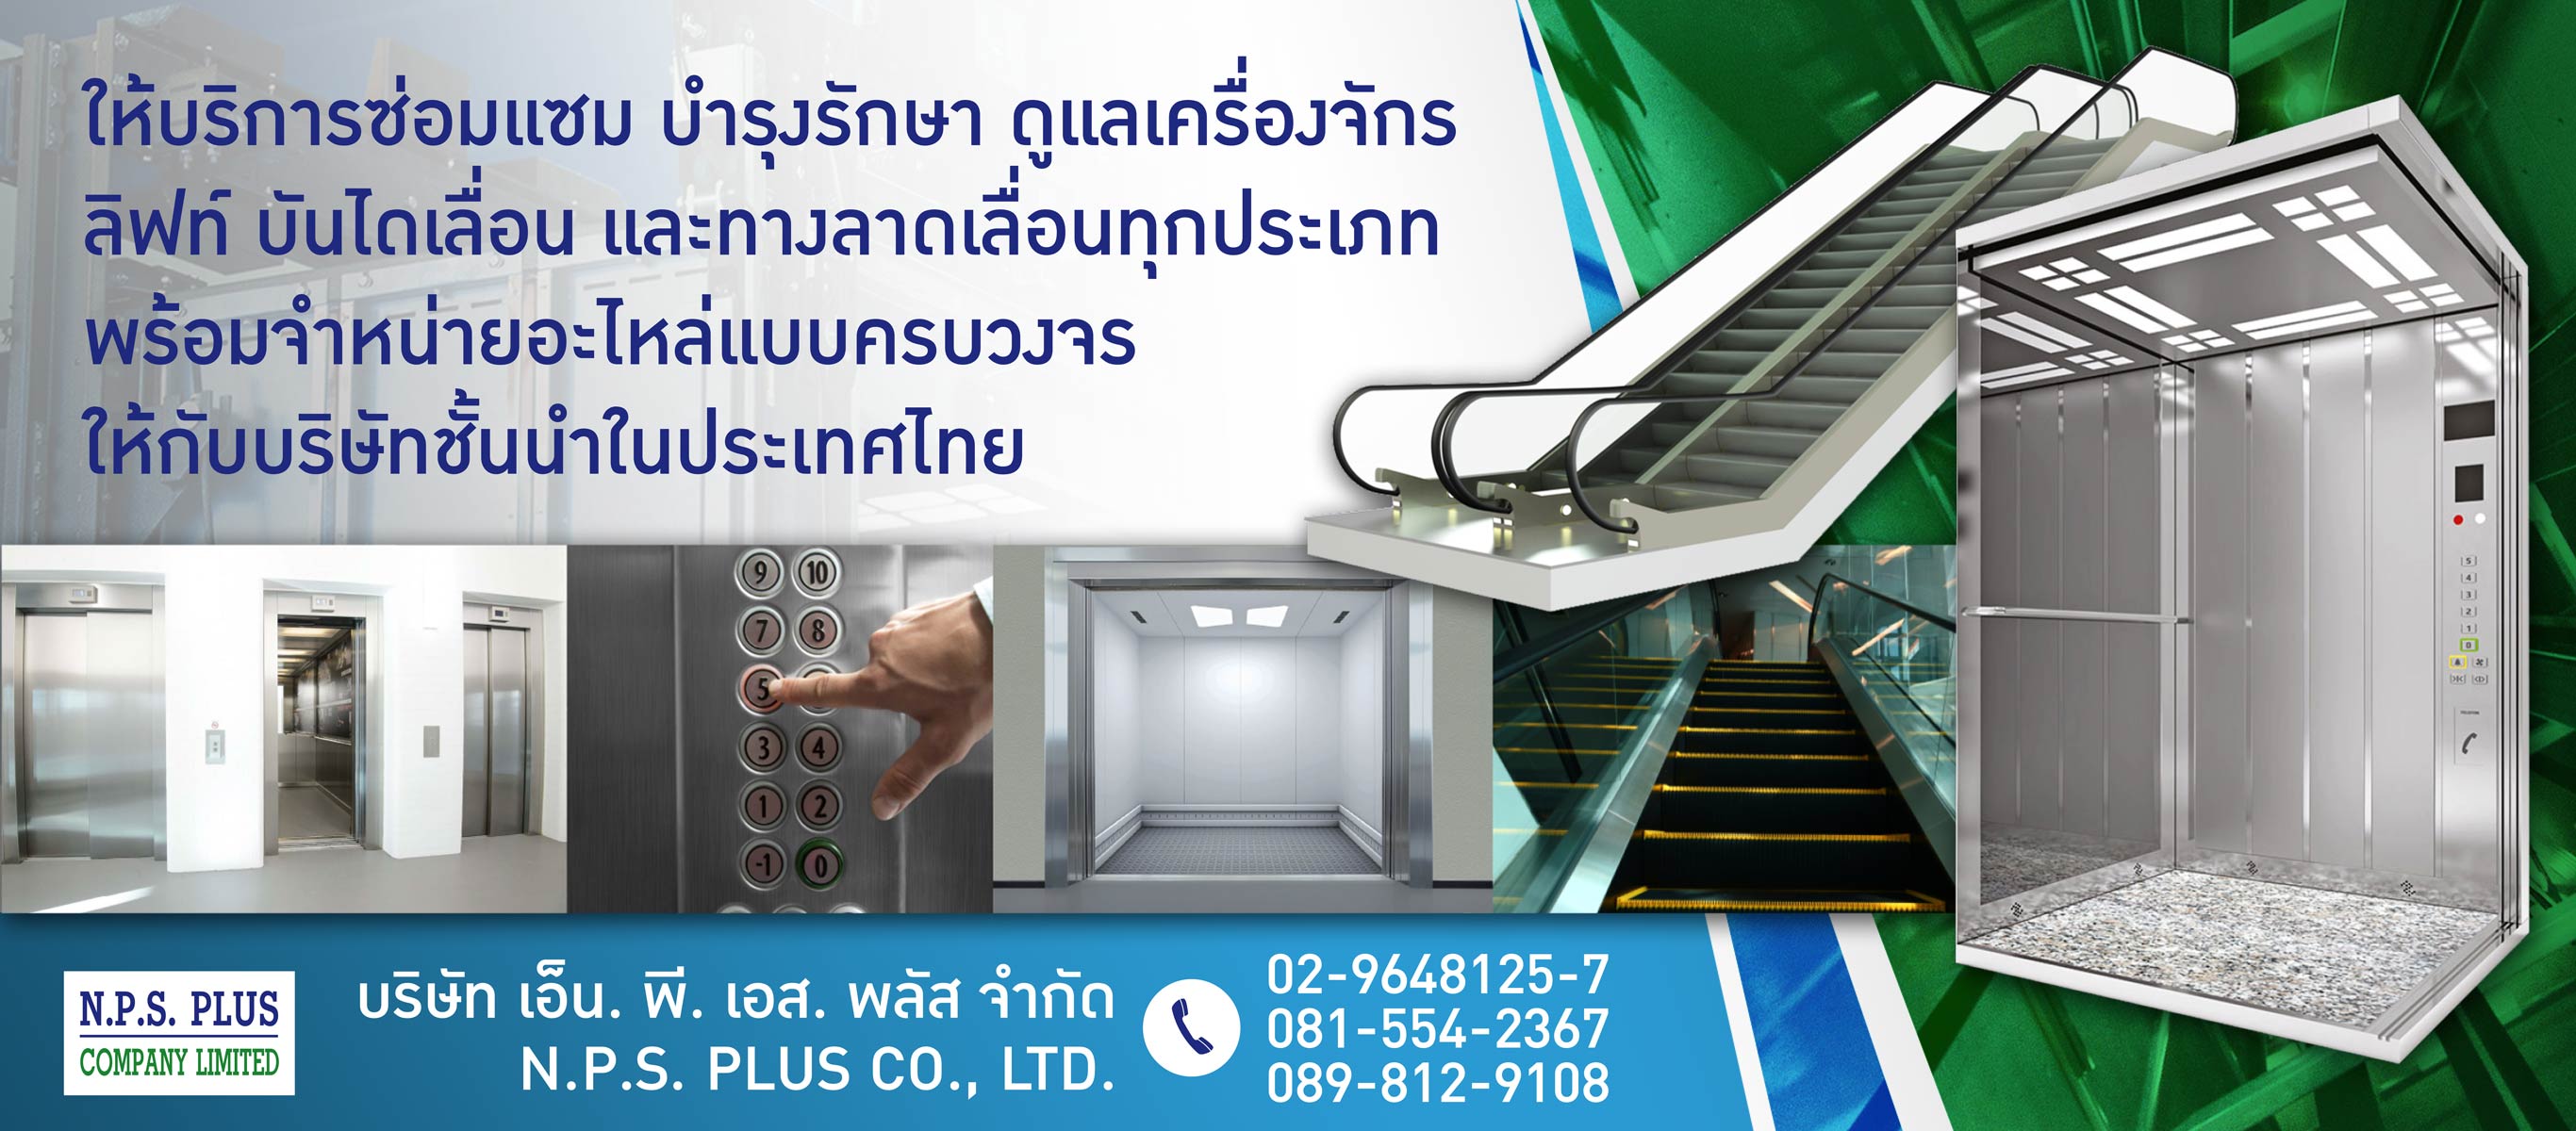 บริษัทให้บริการการดูแล เครื่องจักร ลิฟต์ บันไดเลื่อน นนทบุรี